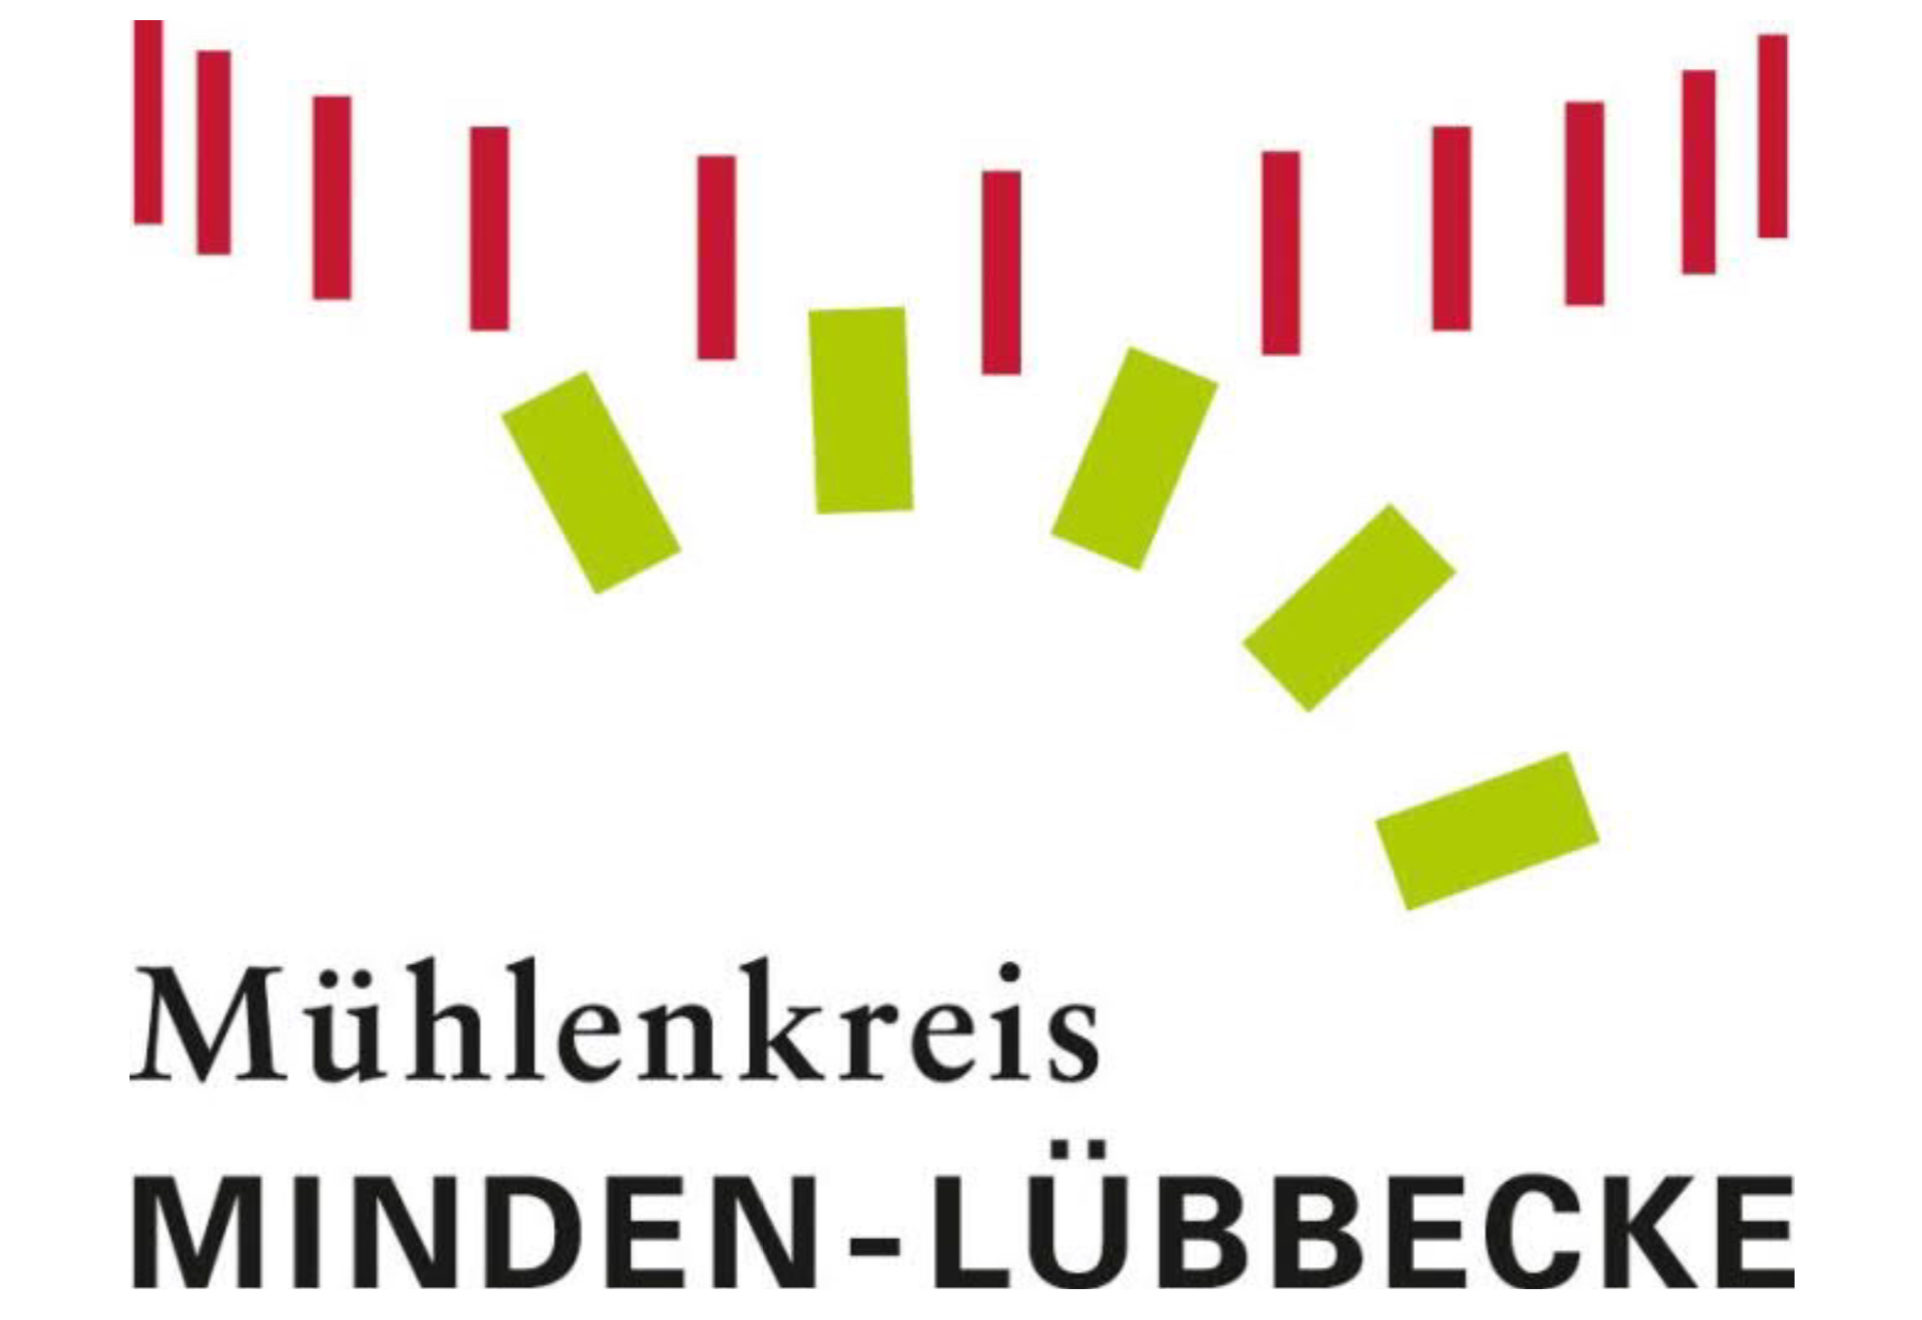 Logo Mühlenkreis